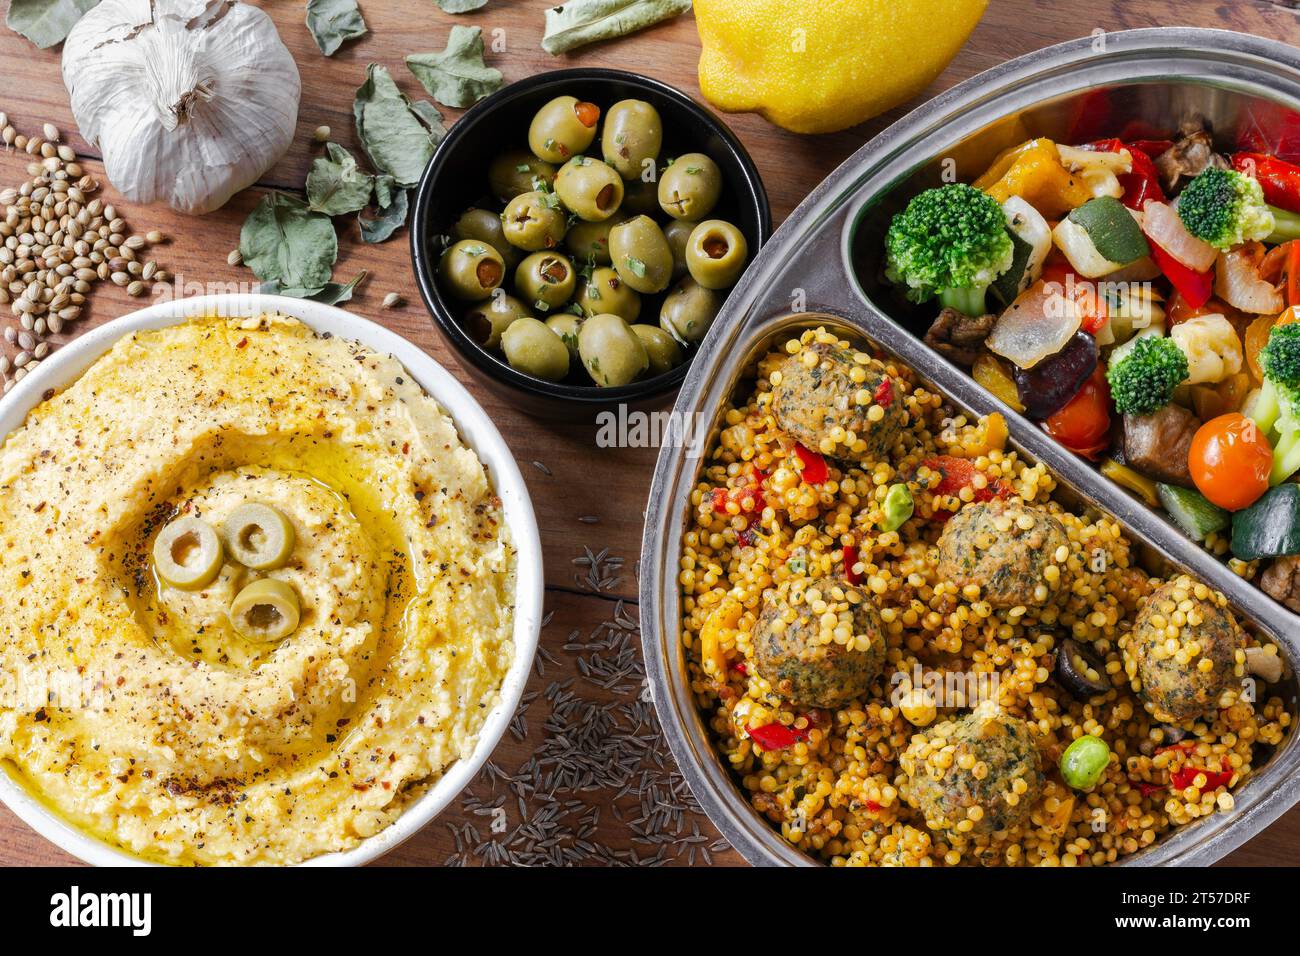 Repas végétalien/végétarien, avec houmous, falafel, légumes grillés et olives Banque D'Images